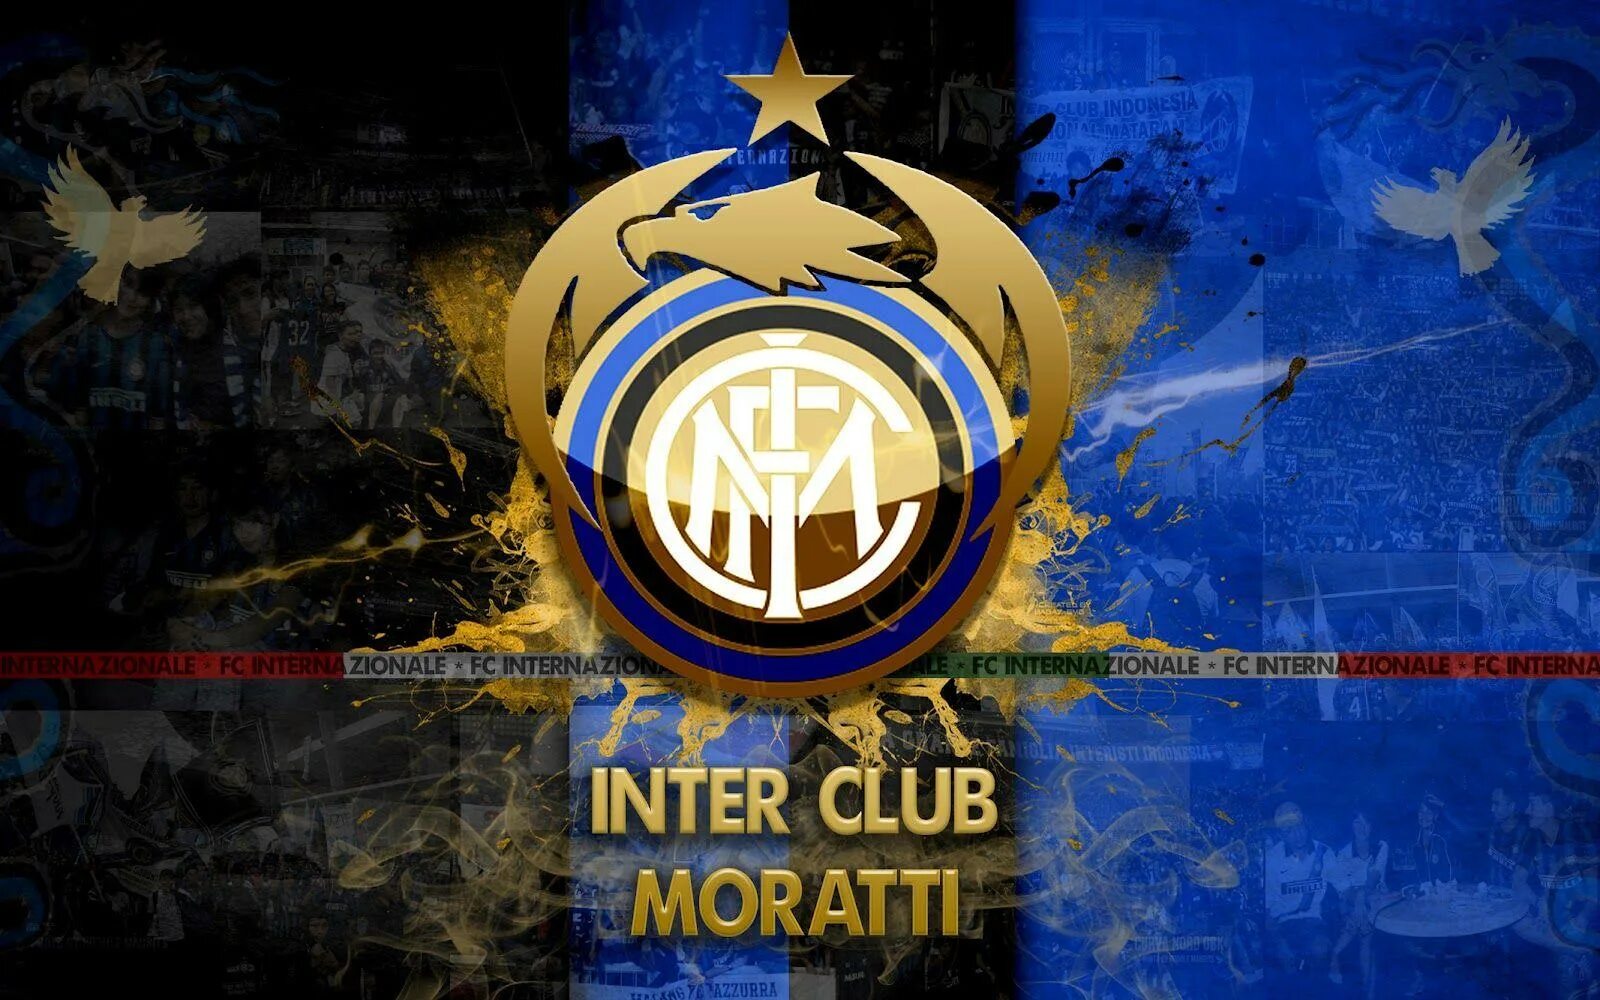 Inter me. ФК Интер. Интер эмблема. ФК Интер логотип.